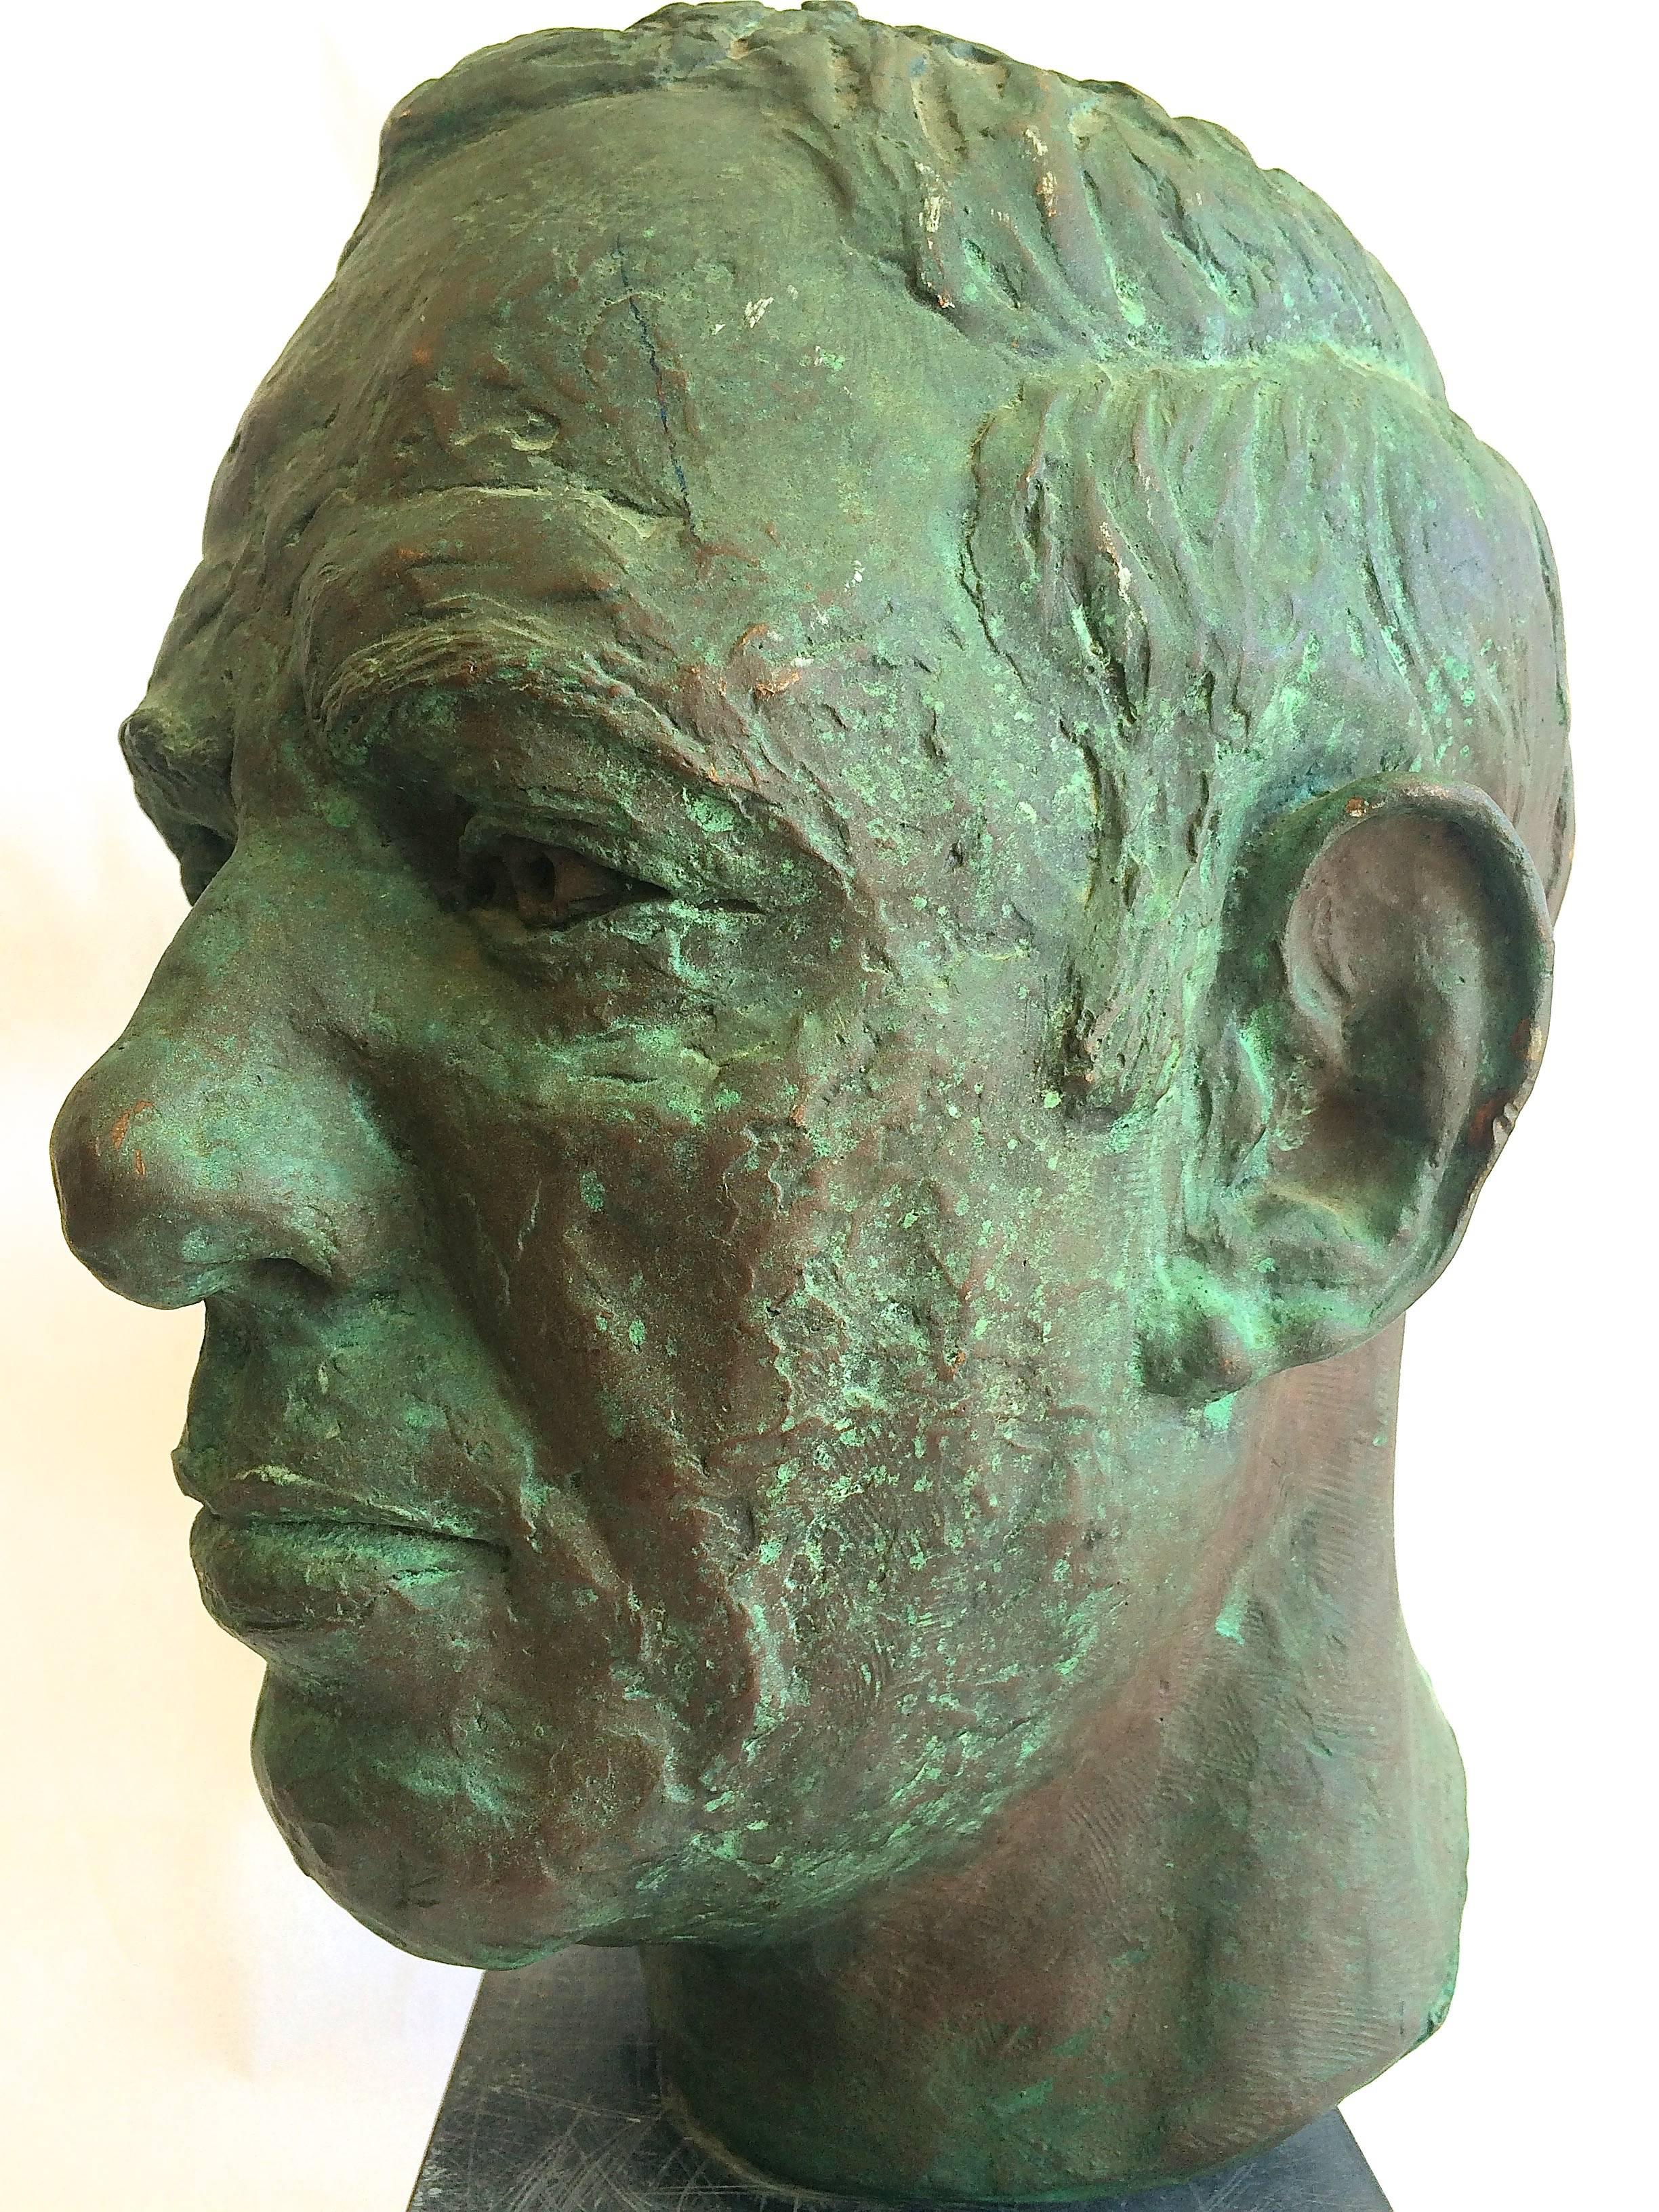  Head of a Man Bronze Sculpture - Gold Figurative Sculpture by Helga Meyer